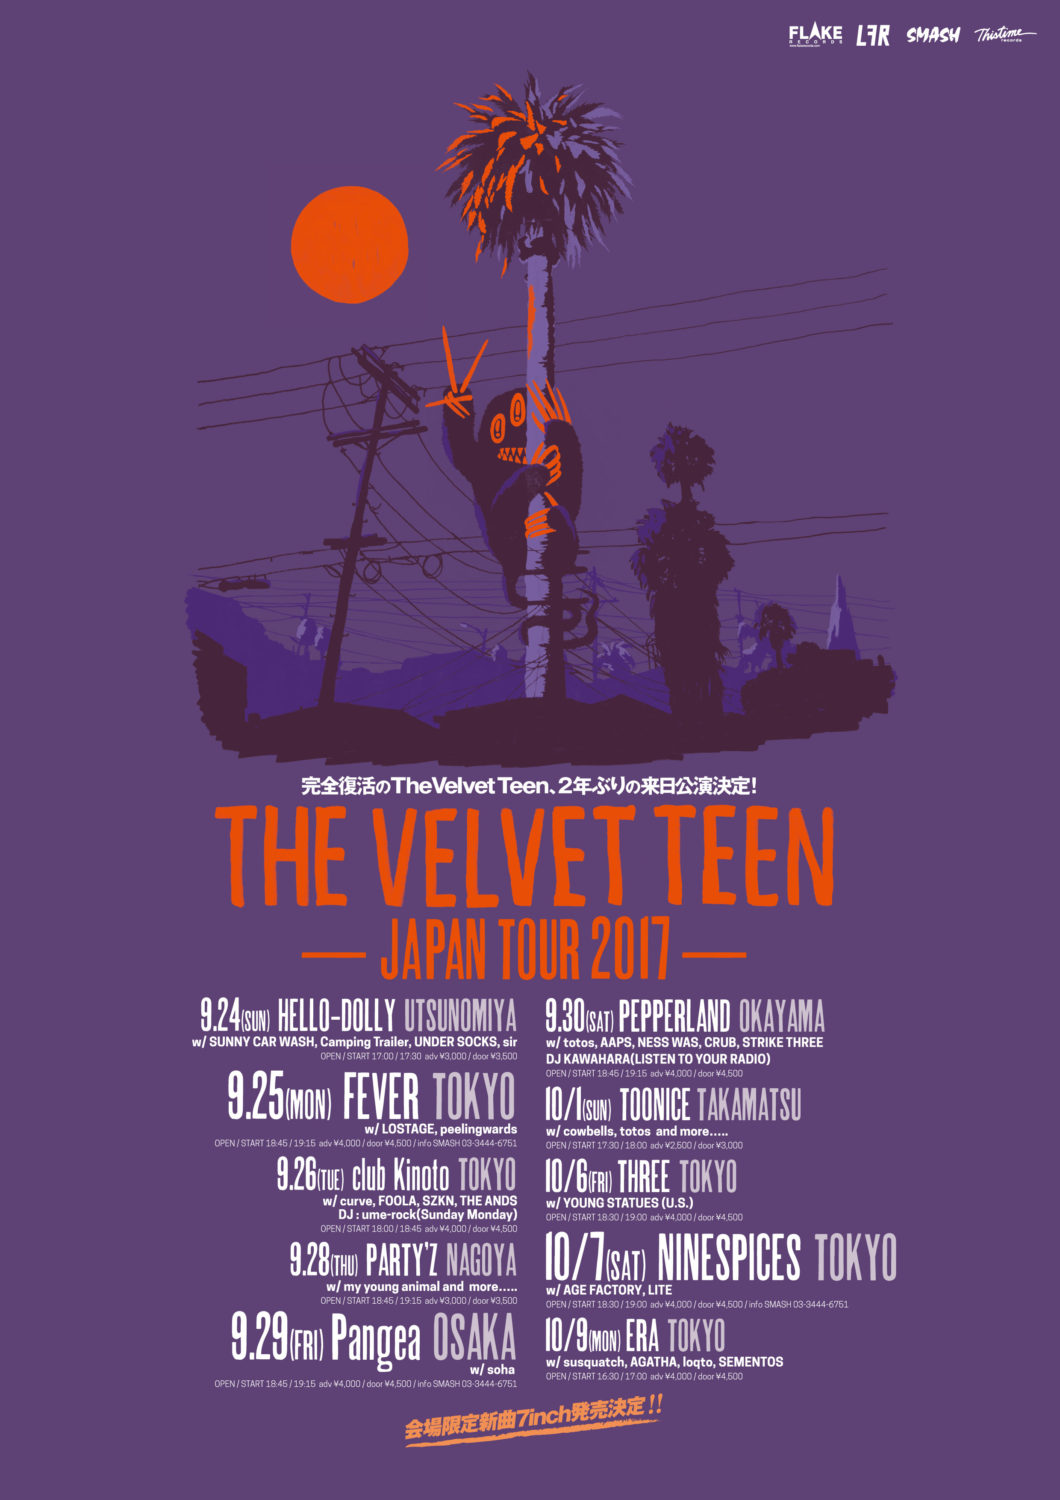 The Velvet Teen